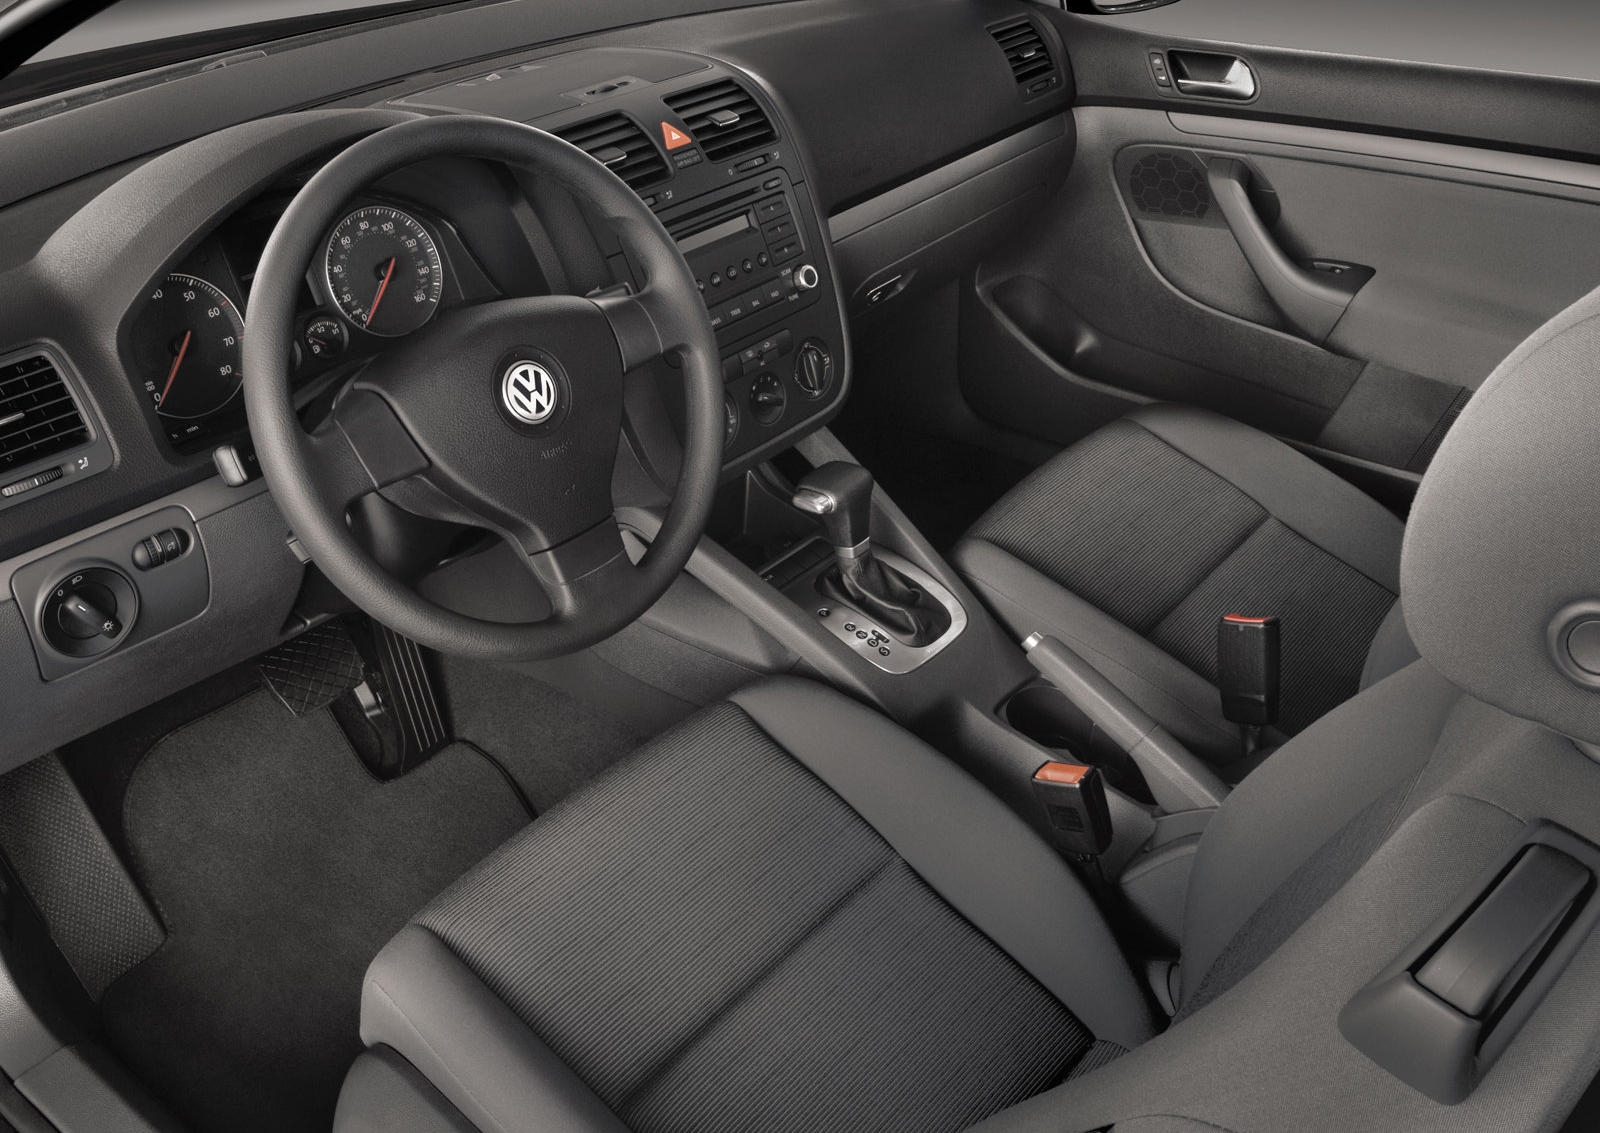 2009 Volkswagen Rabbit Front Seats